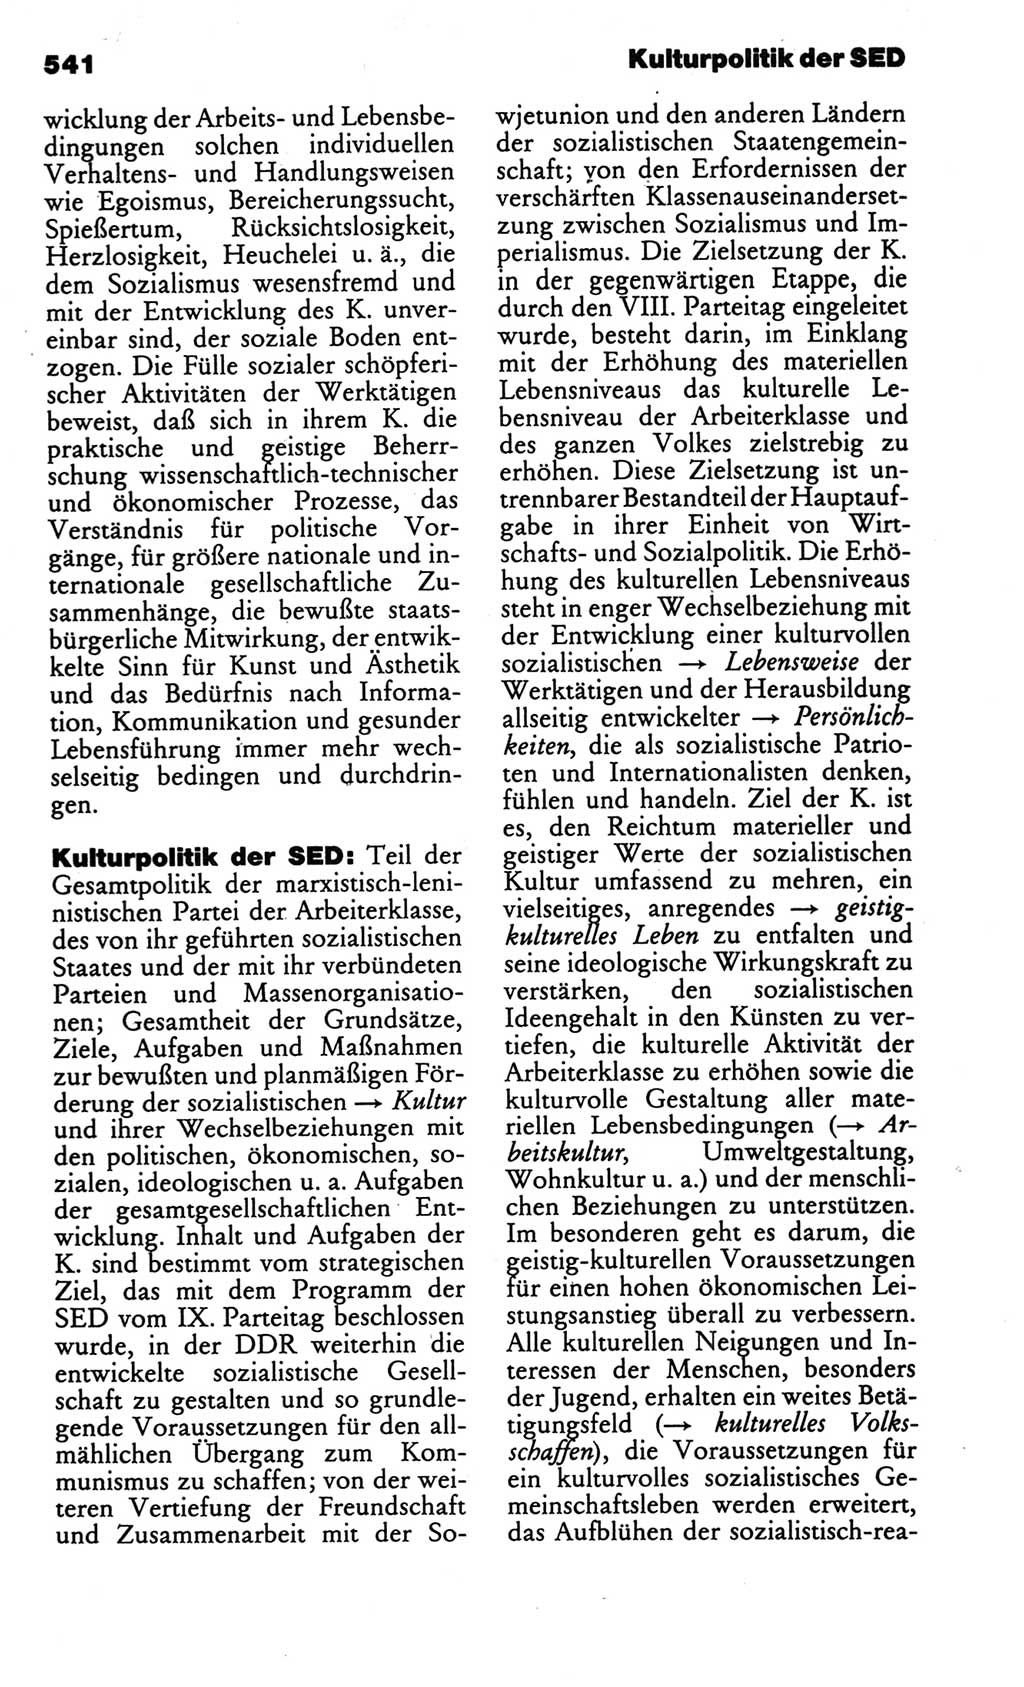 Kleines politisches Wörterbuch [Deutsche Demokratische Republik (DDR)] 1986, Seite 541 (Kl. pol. Wb. DDR 1986, S. 541)